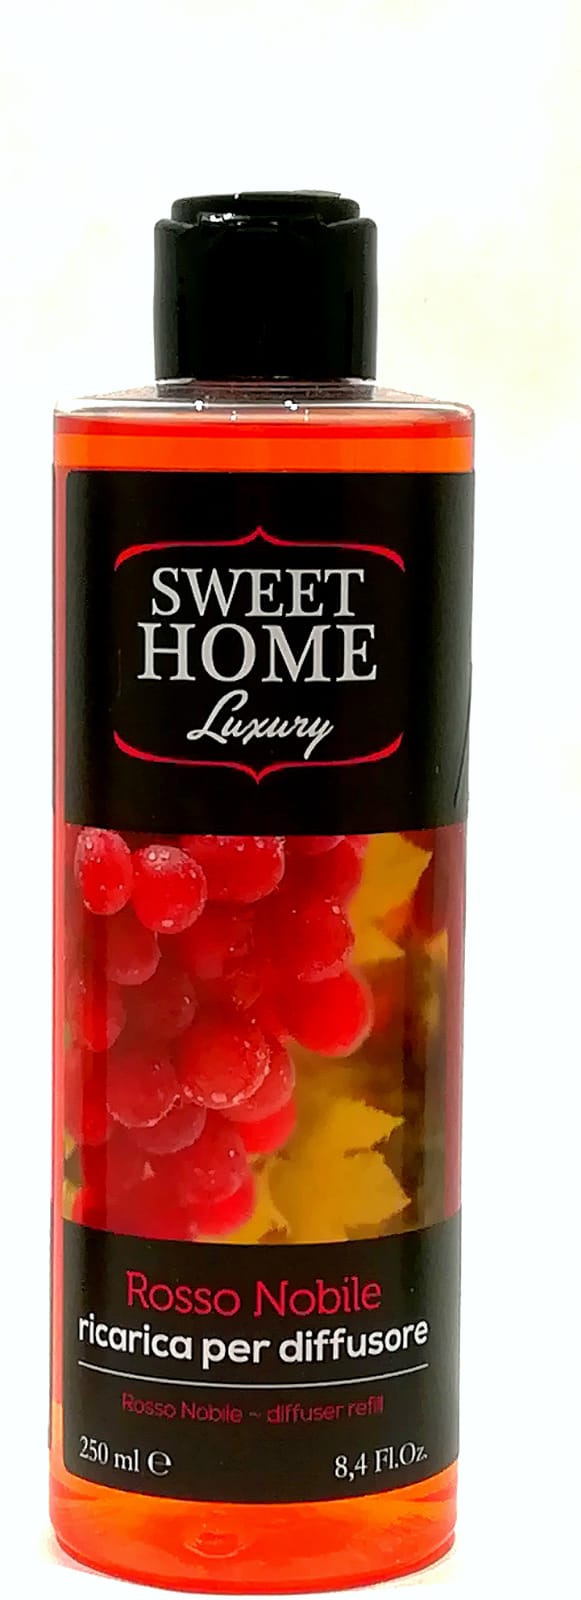 Sweet Home Luxury Diffusore per Ambienti Fior di Cotone 250ml